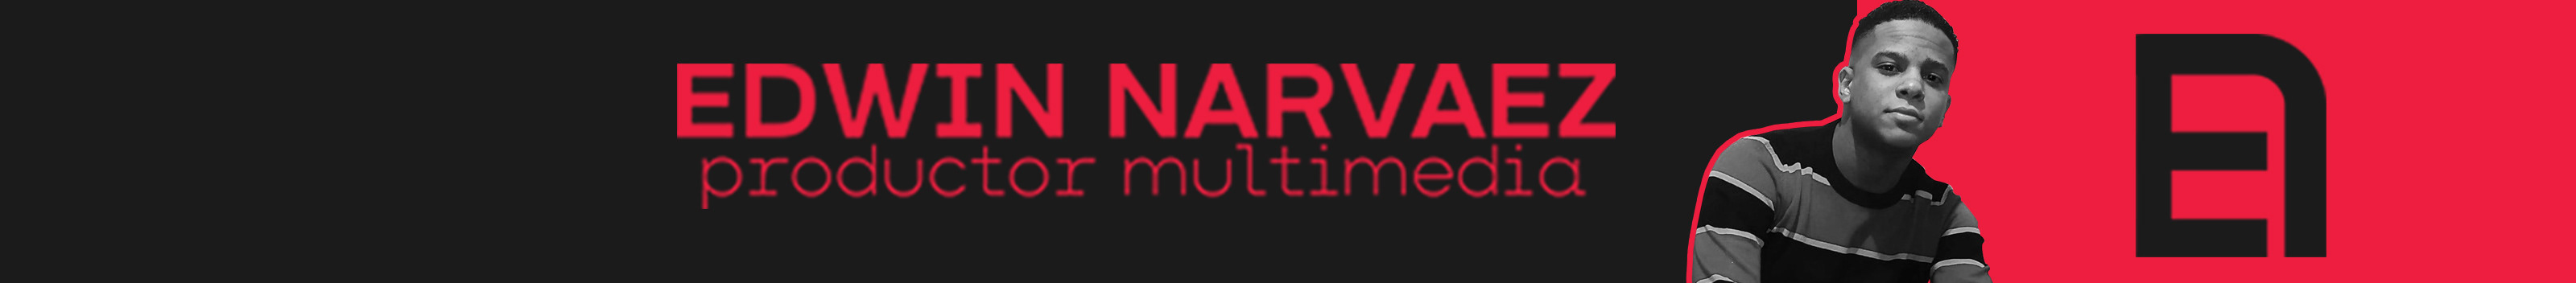 Profil-Banner von Edwin Narvaez